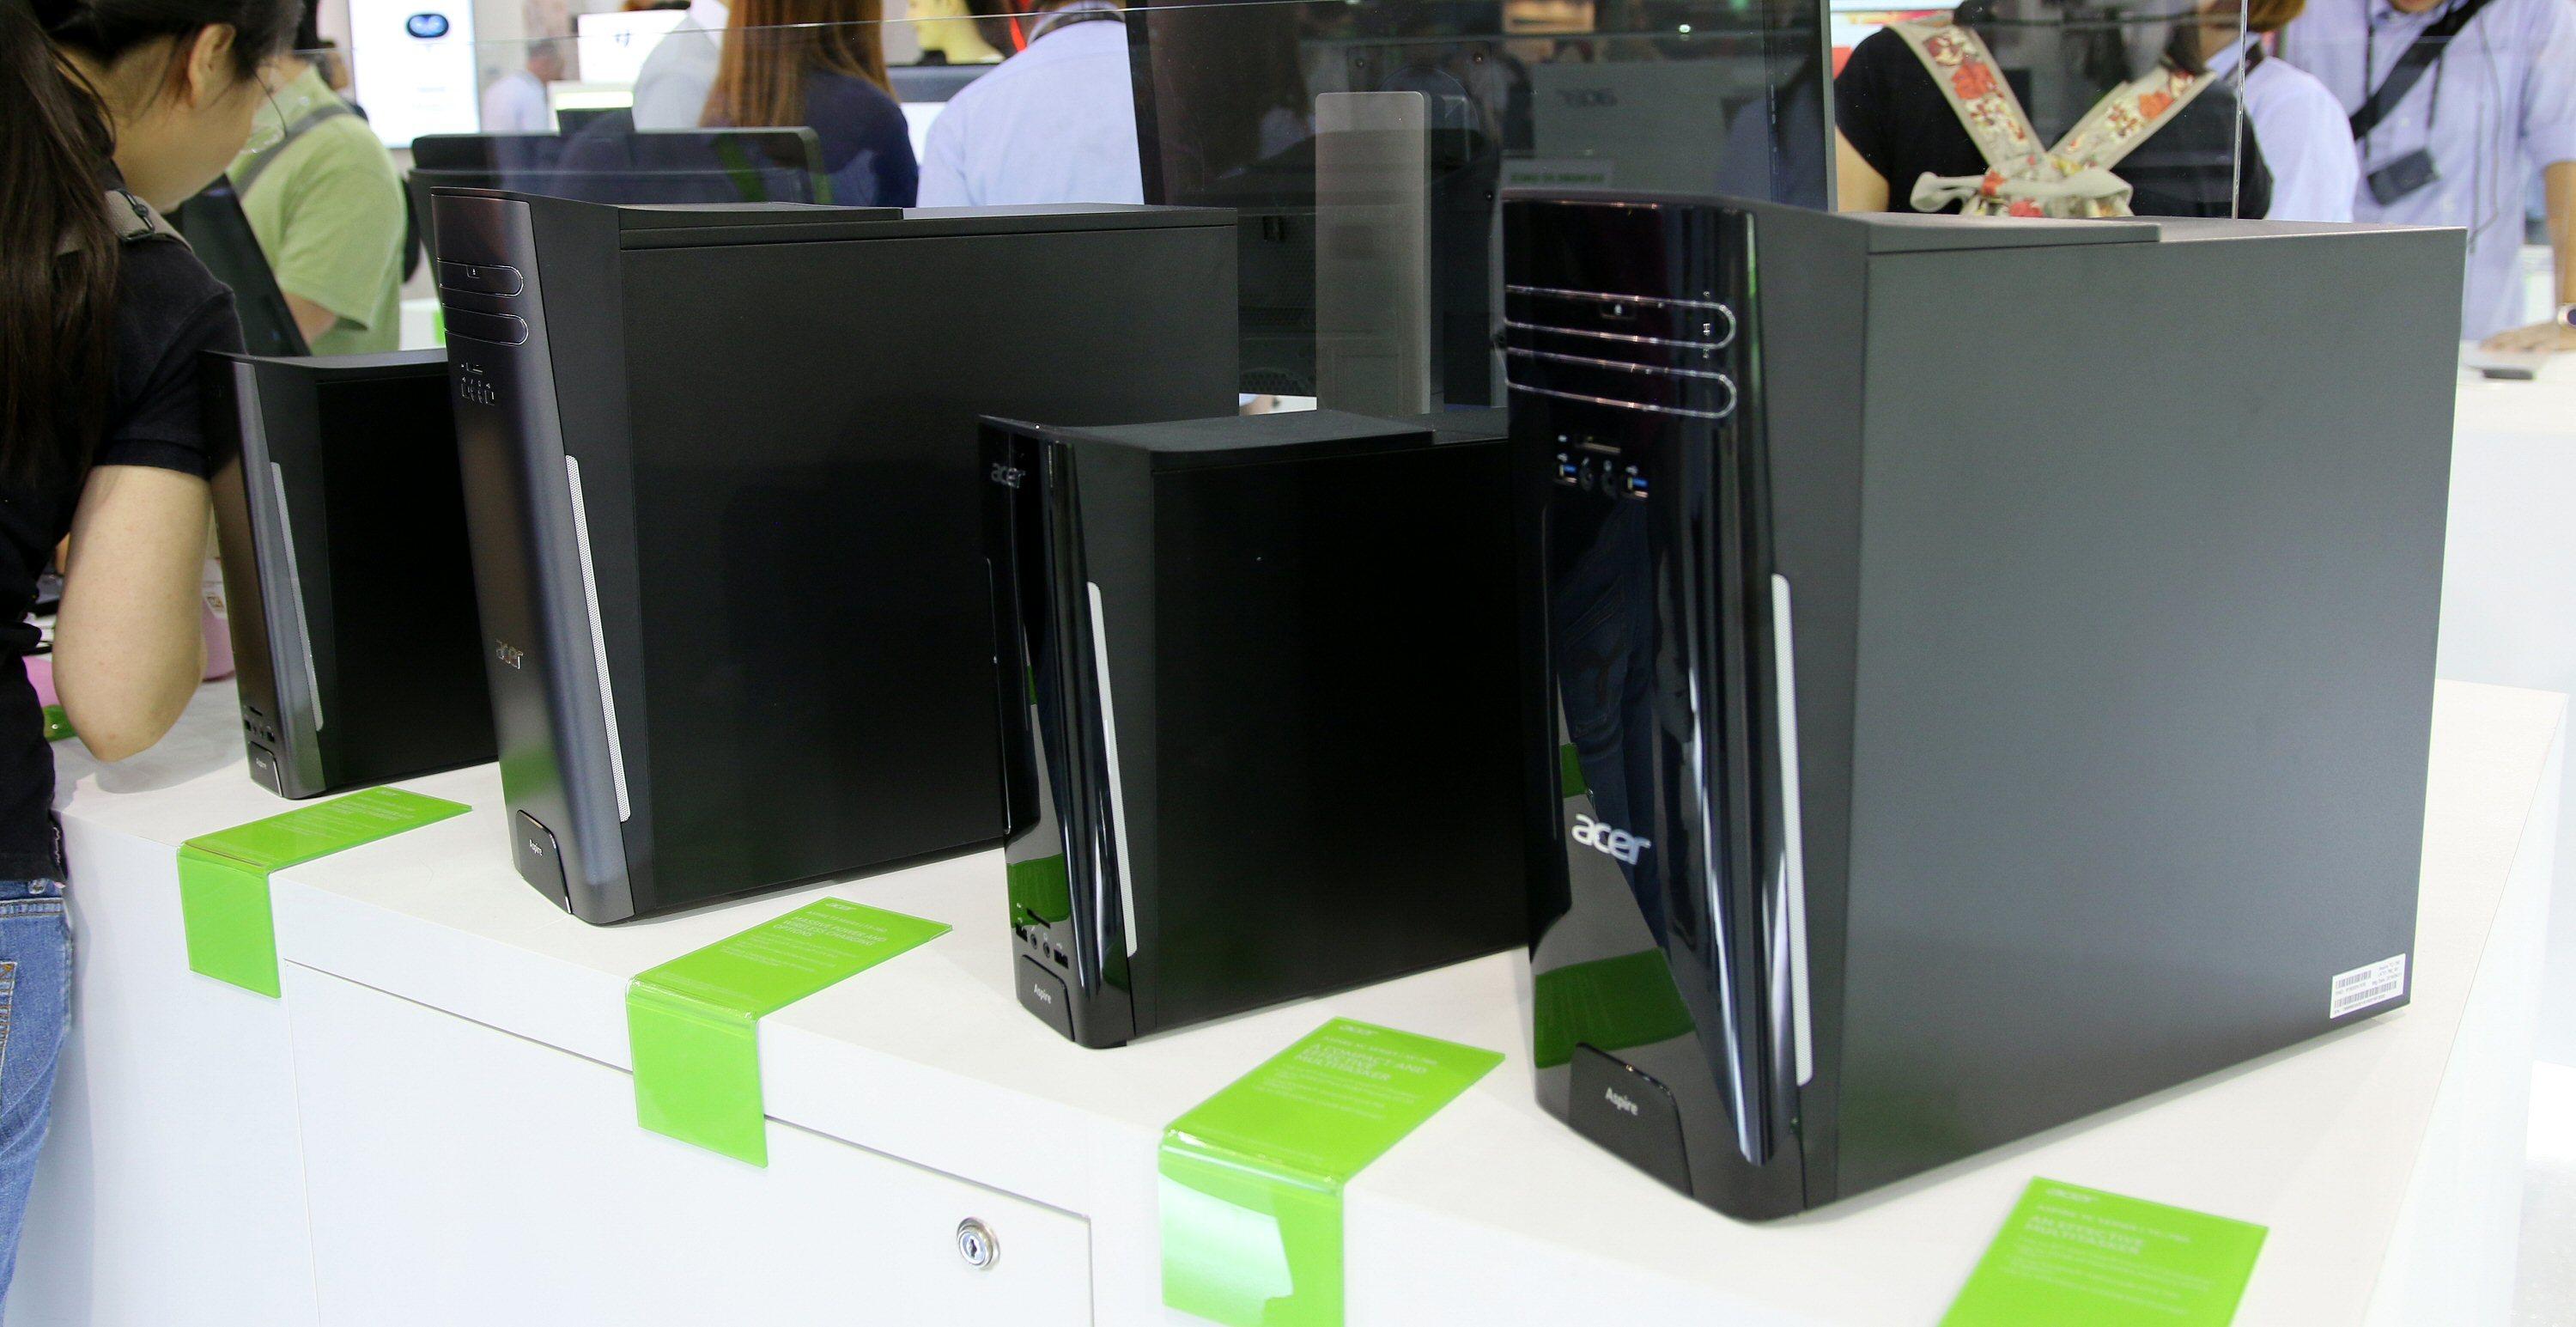 På toppen av disse PC-ene fra Acer sitter en integrert ladeplate for mobilen og annet som er kompatibelt med Qi-teknologien.